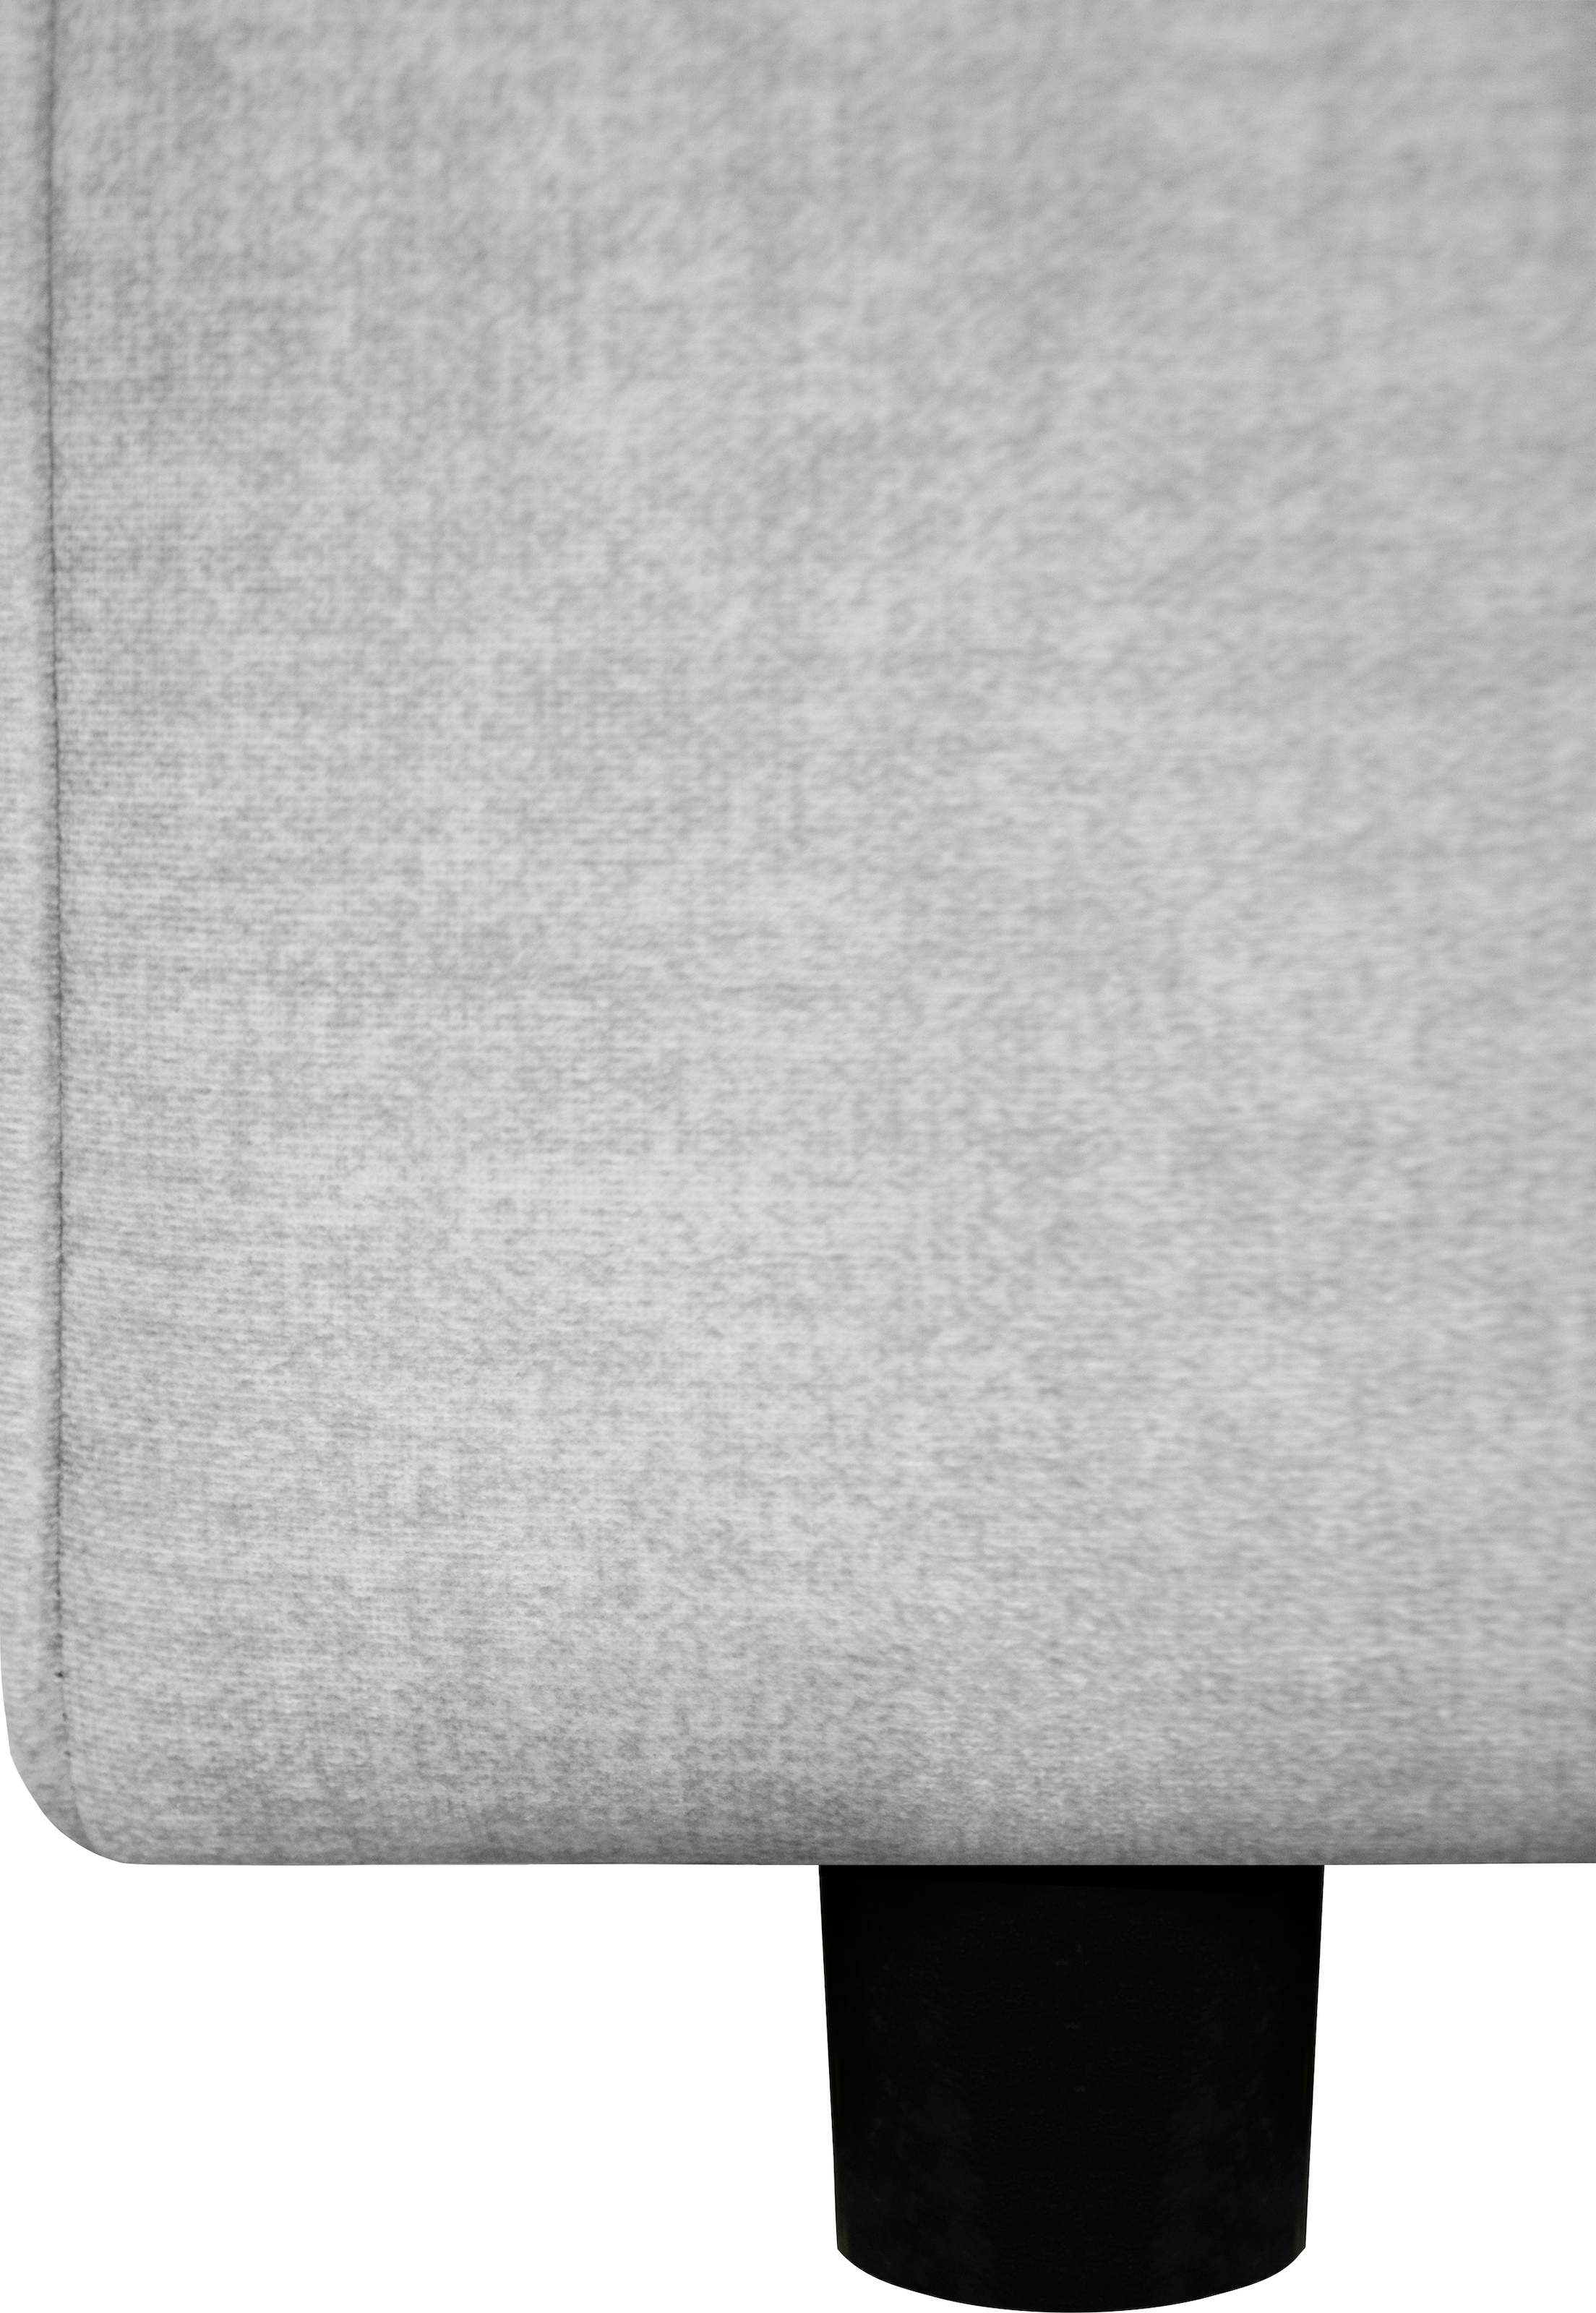 OTTO products Sessel »Grenette«, im Baumwoll-/Leinenmix oder umweltschoned aus recycelten Stoffen